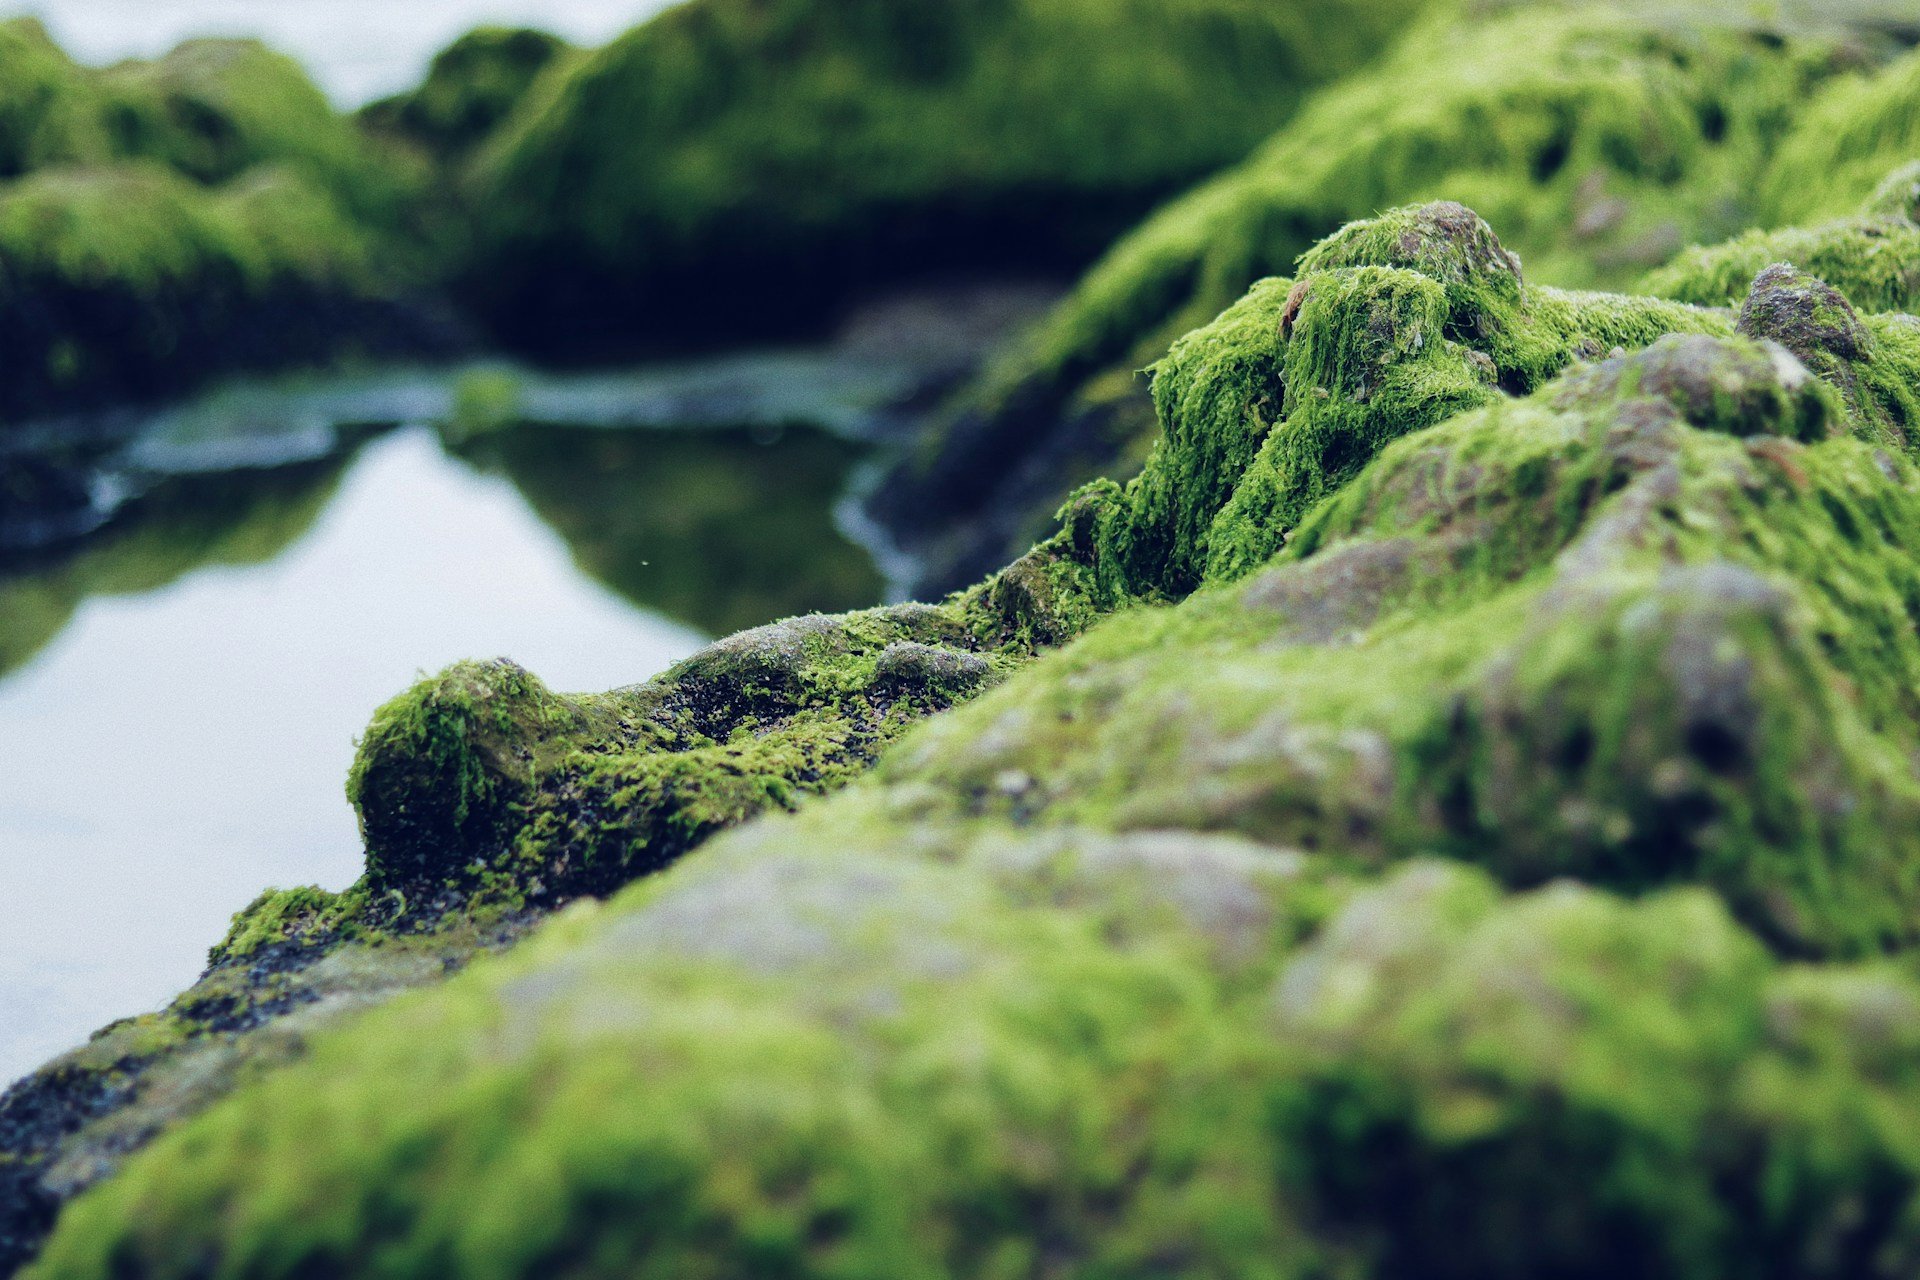 Algae on rocks.